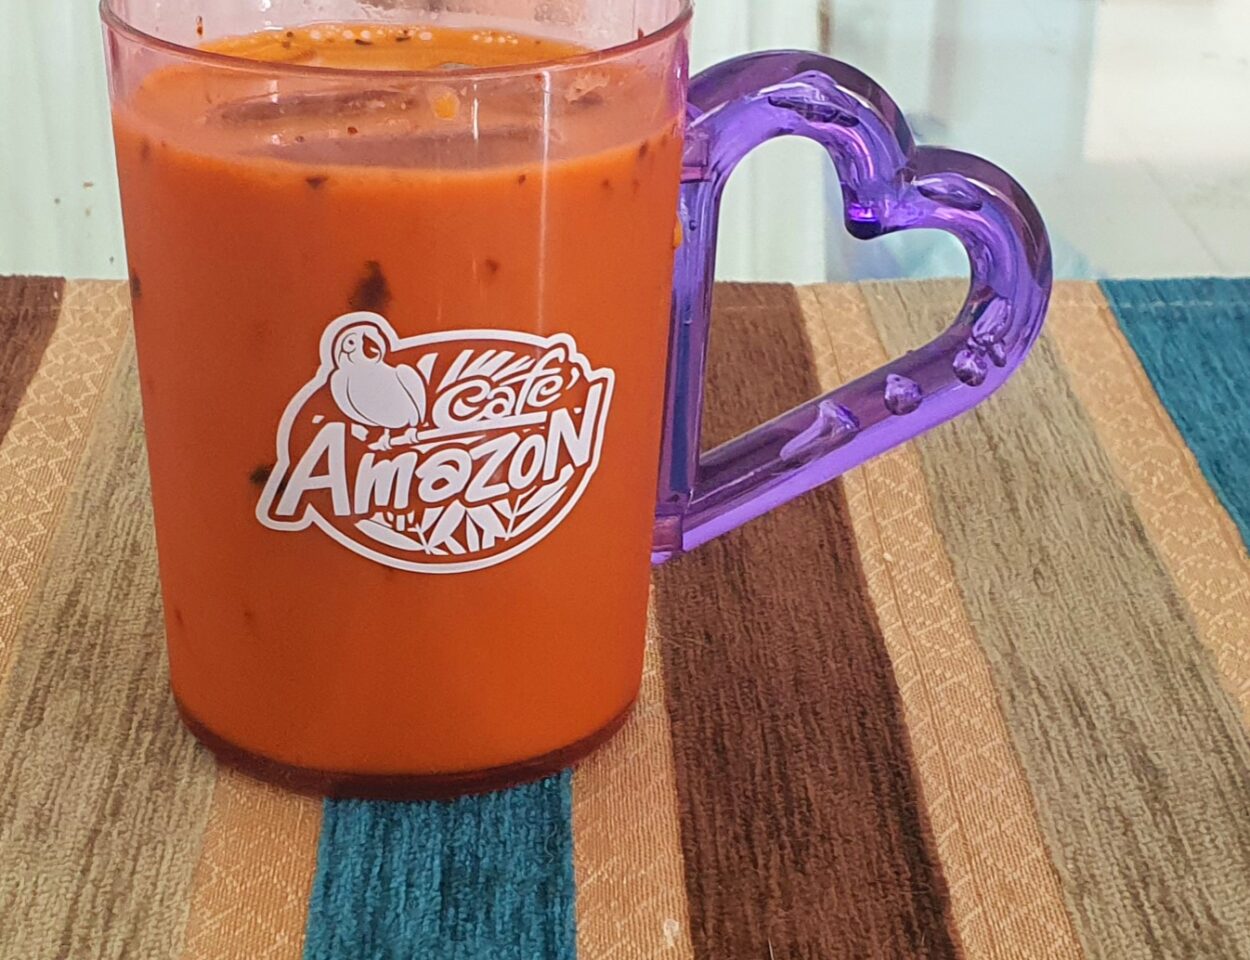  Thai Iced Tea By Café Amazon Placed On A Table